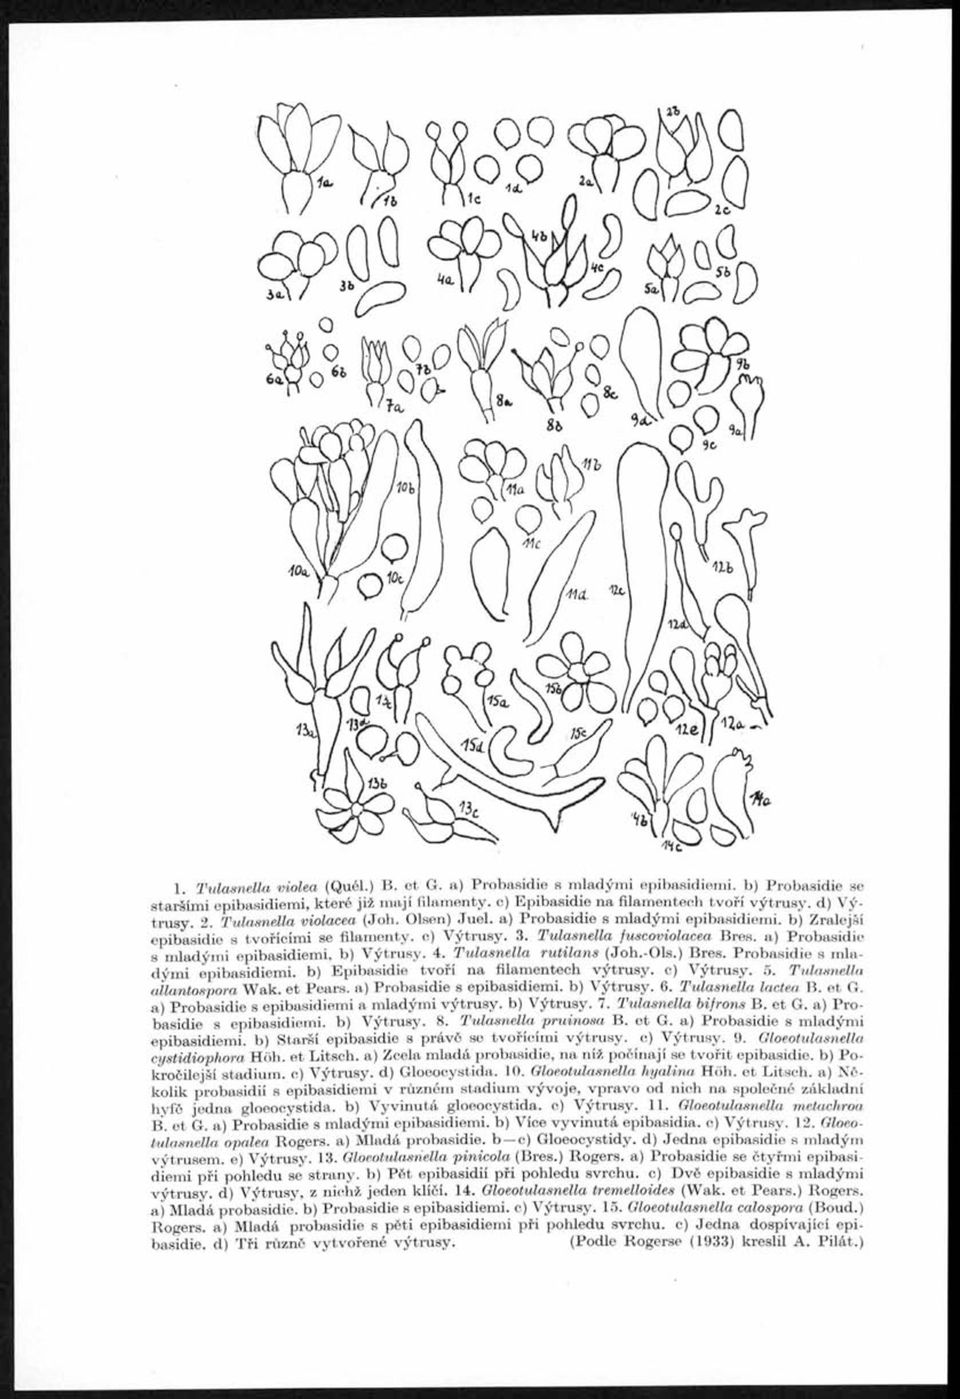 3. Tulasnella fuscoviolacea Bres. a) Probasidie s mladými epibasidiemi, b) Výtrusy. 4. T ulasnella rutilans (Joh.-Ols.) Bres. Probasidie s mladými epibasidiemi. b) Epibasidie tvoří na filamentech výtrusy, c) Výtrusy.